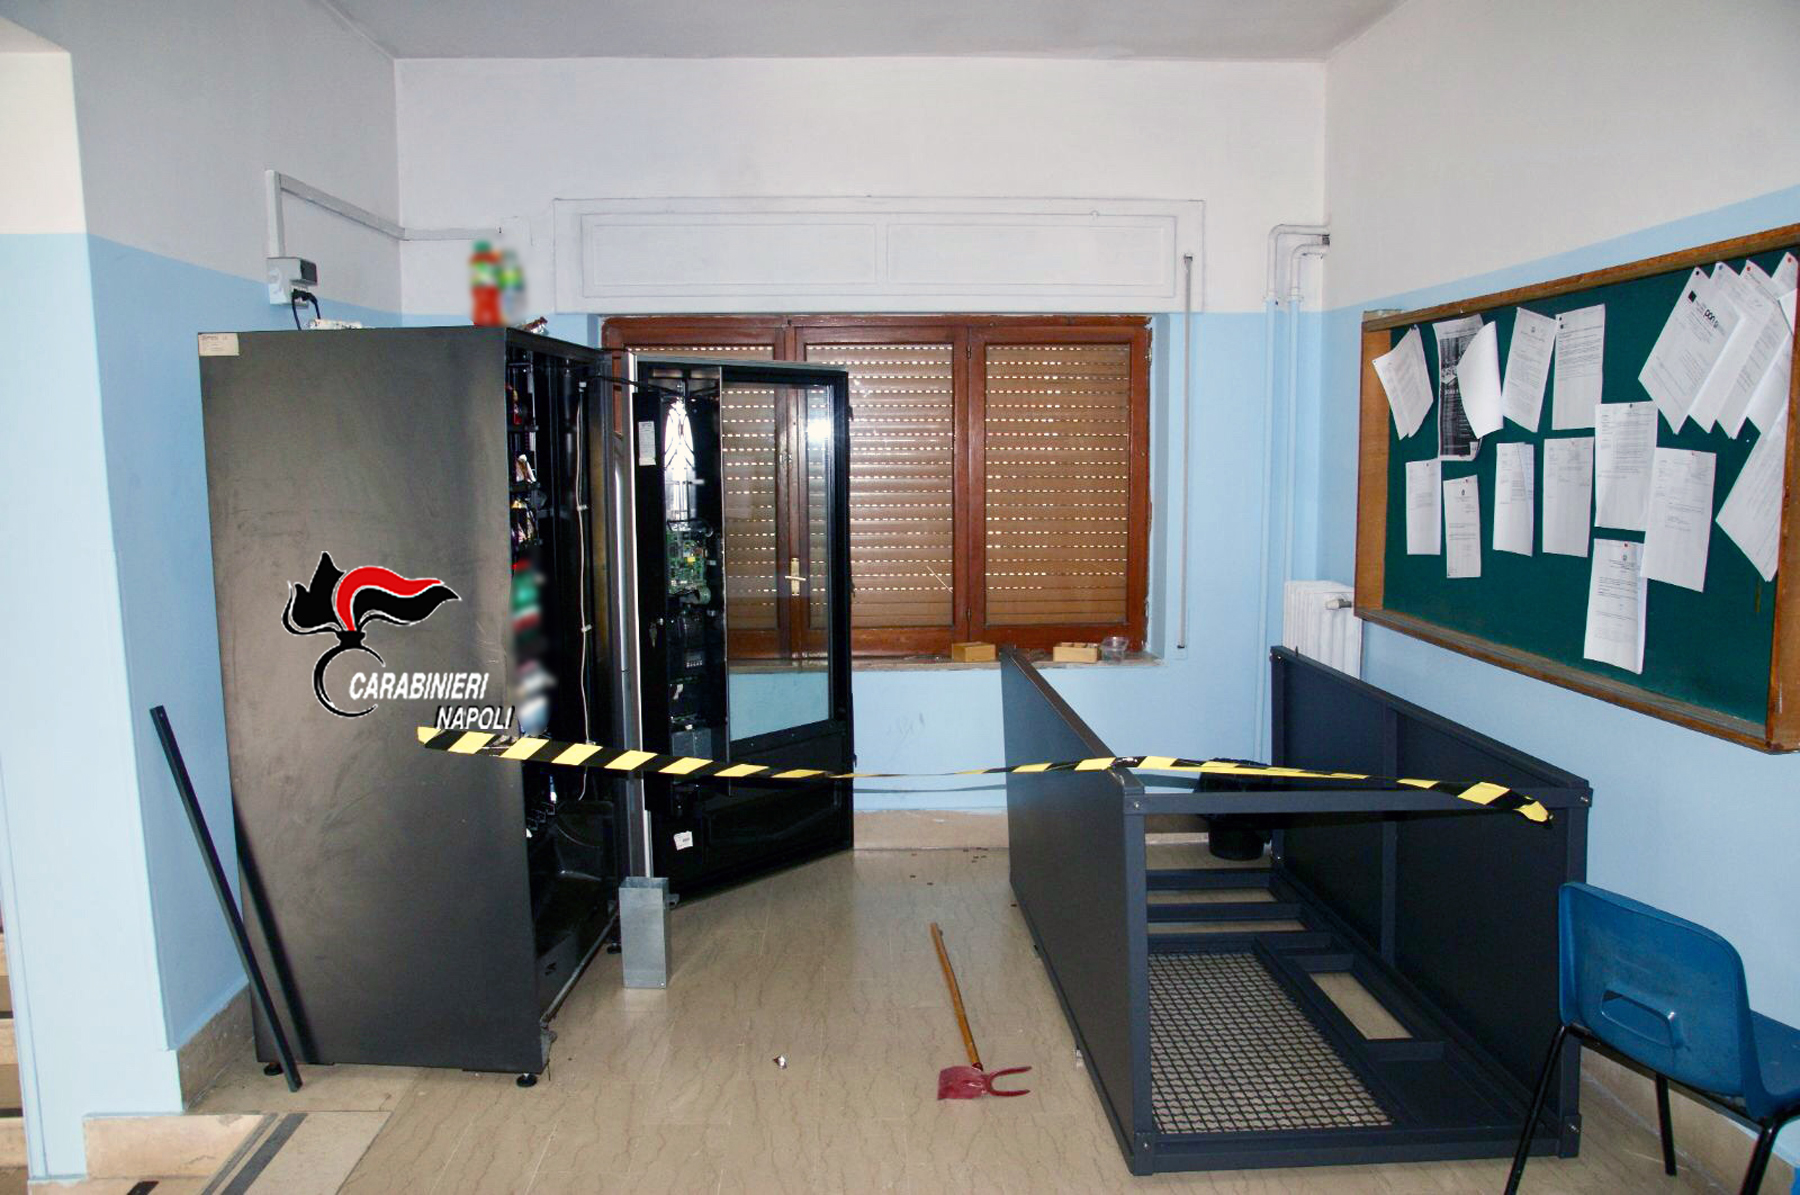  Furti nelle scuole di Casoria, carabinieri arrestano un ladro individuato grazie alle impronte digitali 